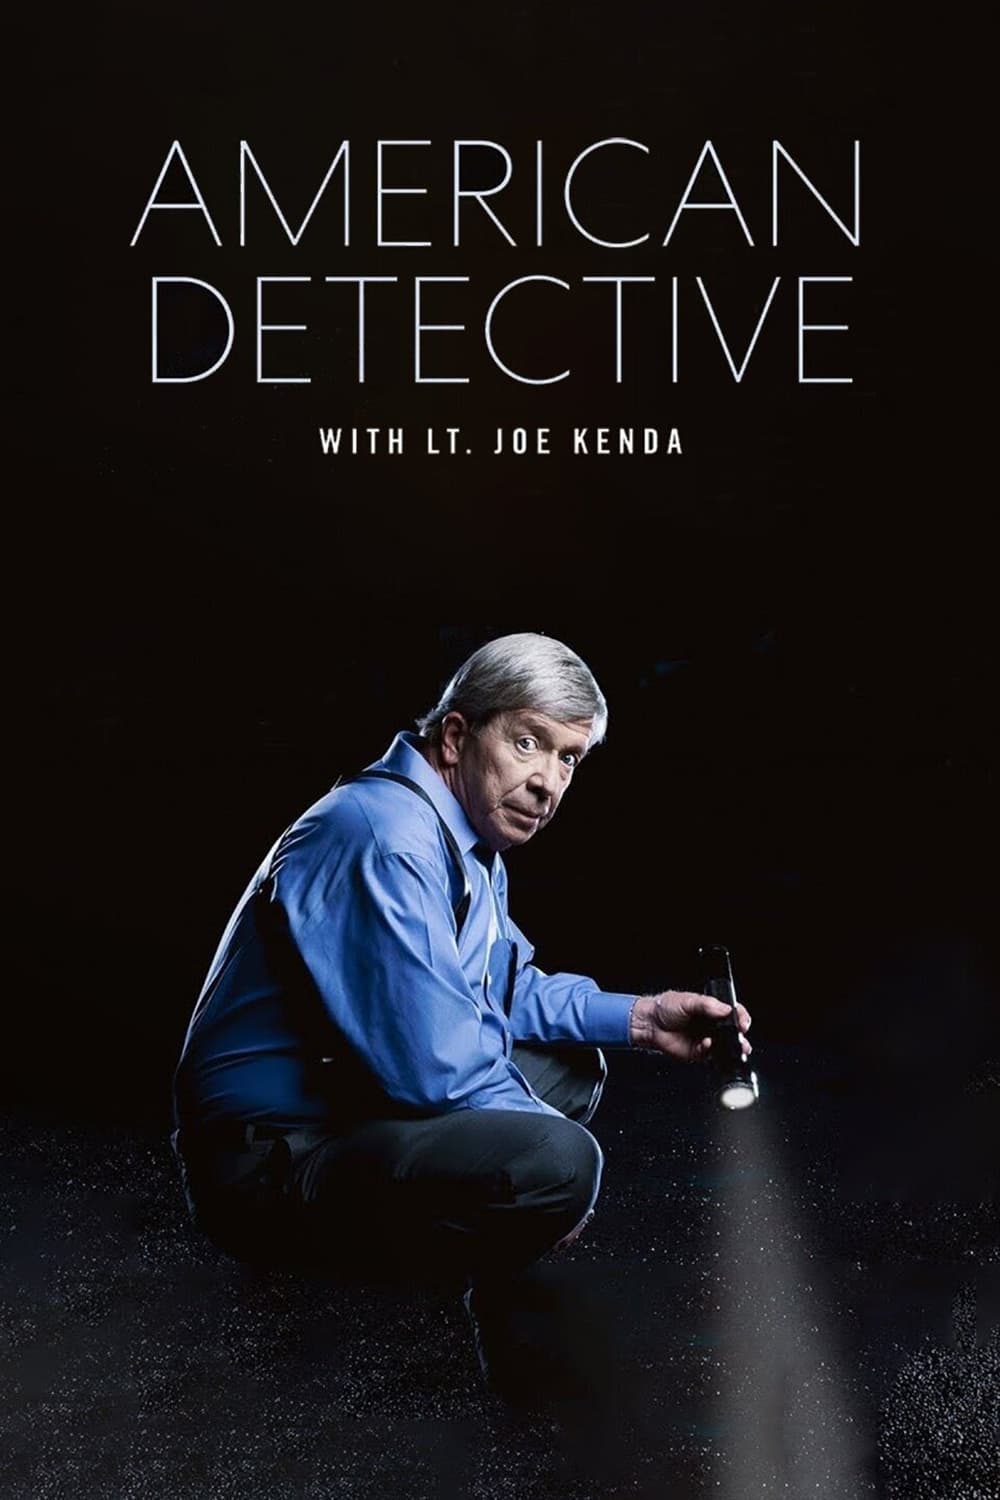 Caratula de American Detective with Lt. Joe Kenda (Detective americano, con Joe Kenda) 